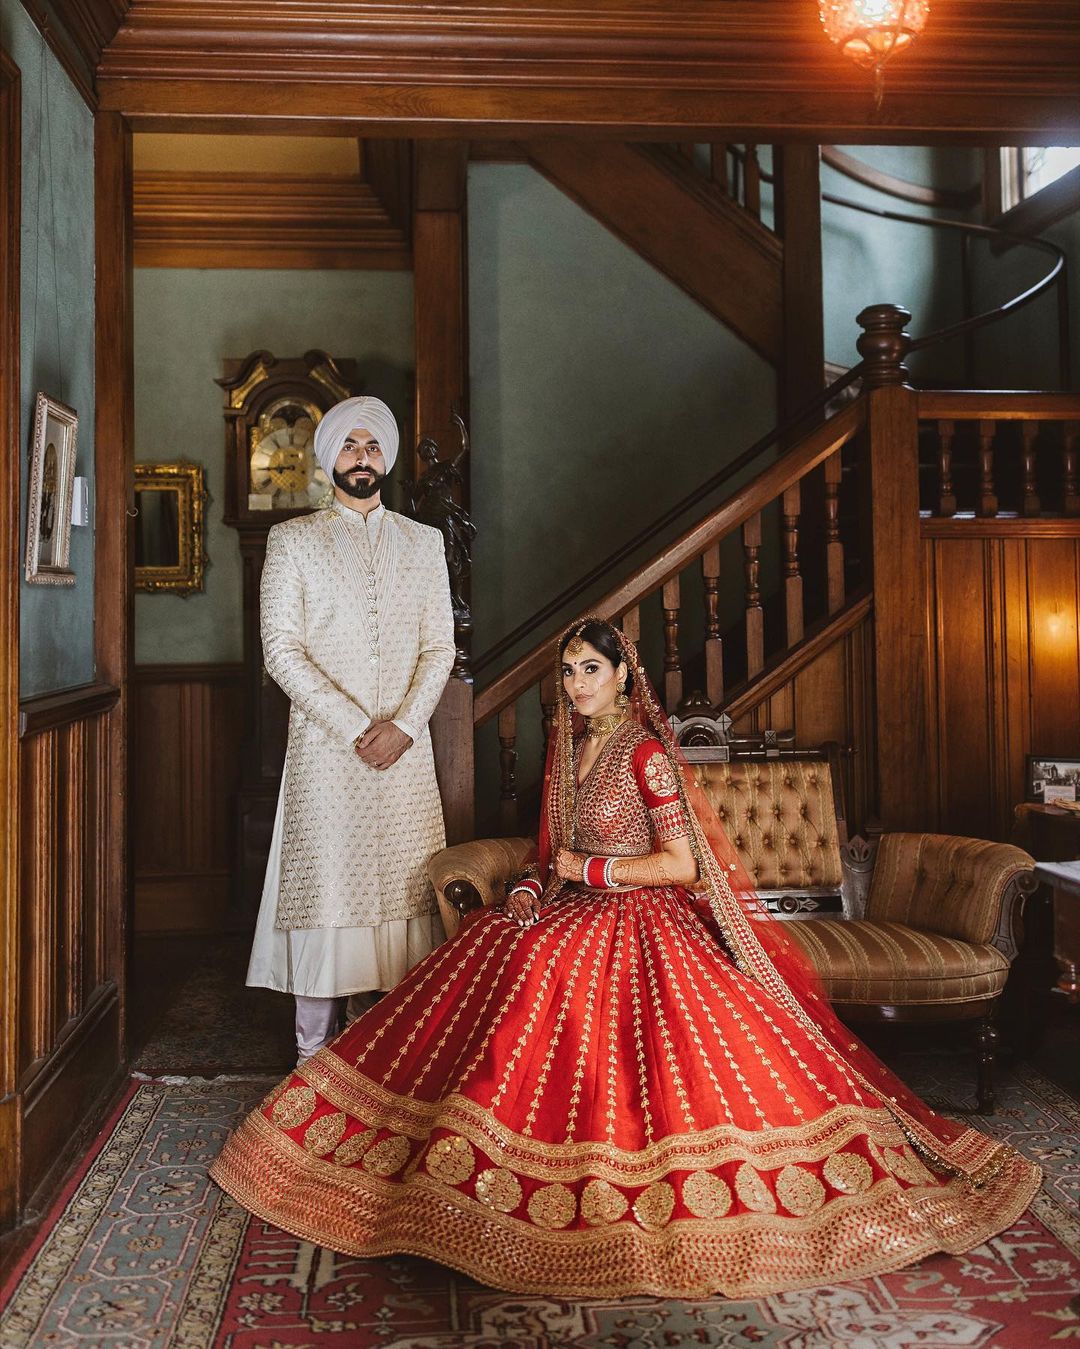 The Detailed Designed Bridal Lehenga Stunning Sabyasachi Lehengas Spotted On Real Brides